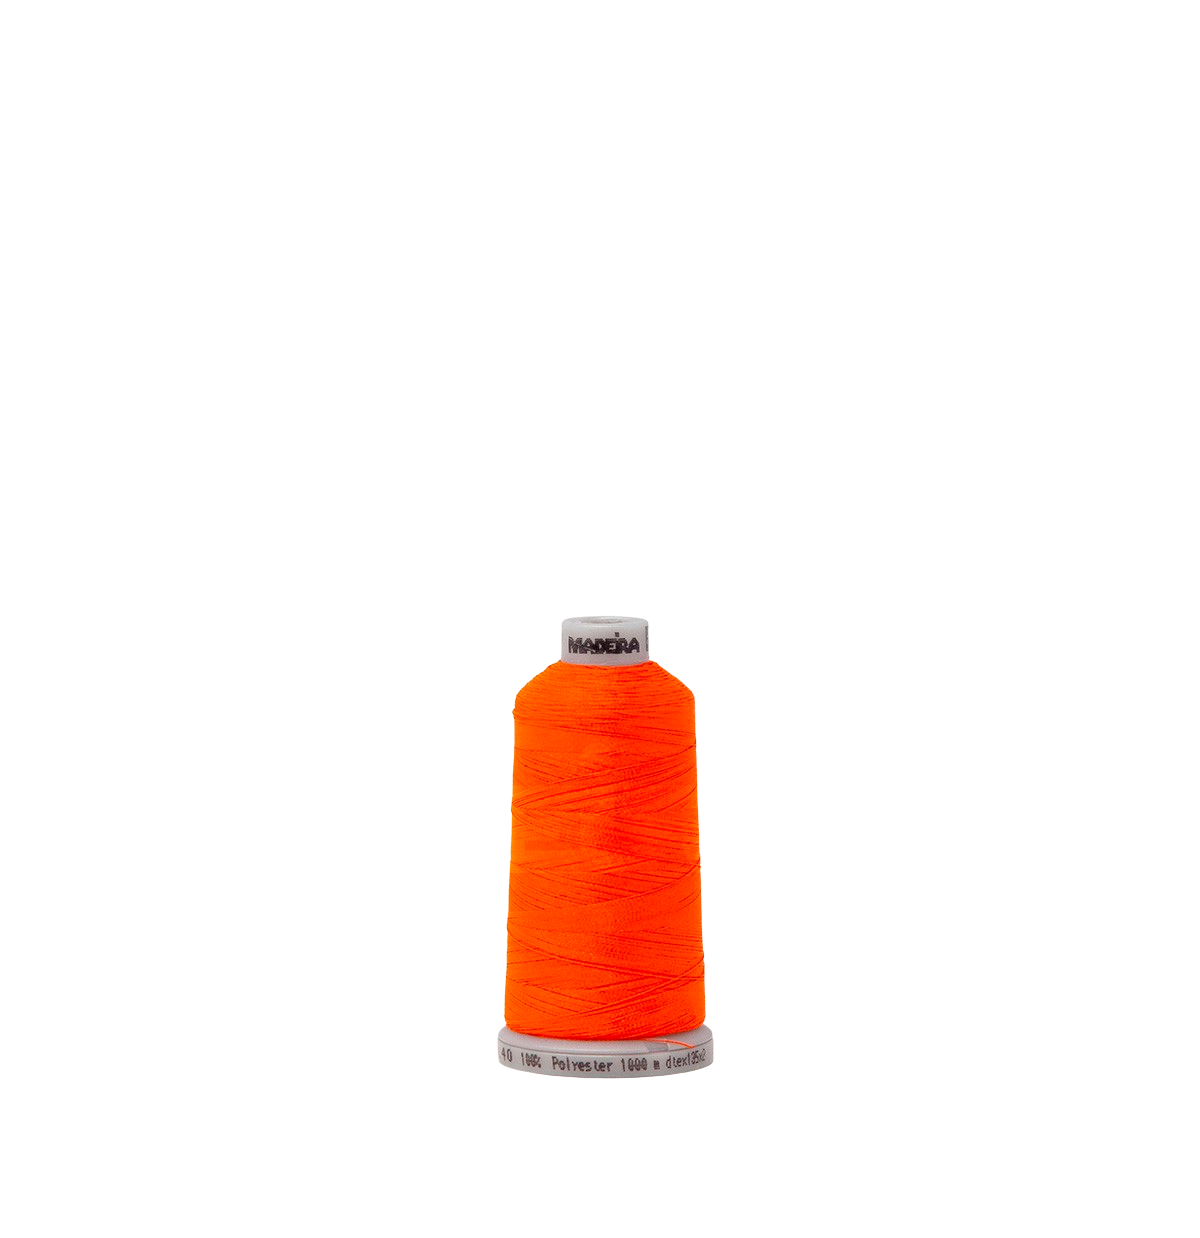 Fluorescent Red Orange 1837 #40 Weight Madeira Polyneon Thread - 0